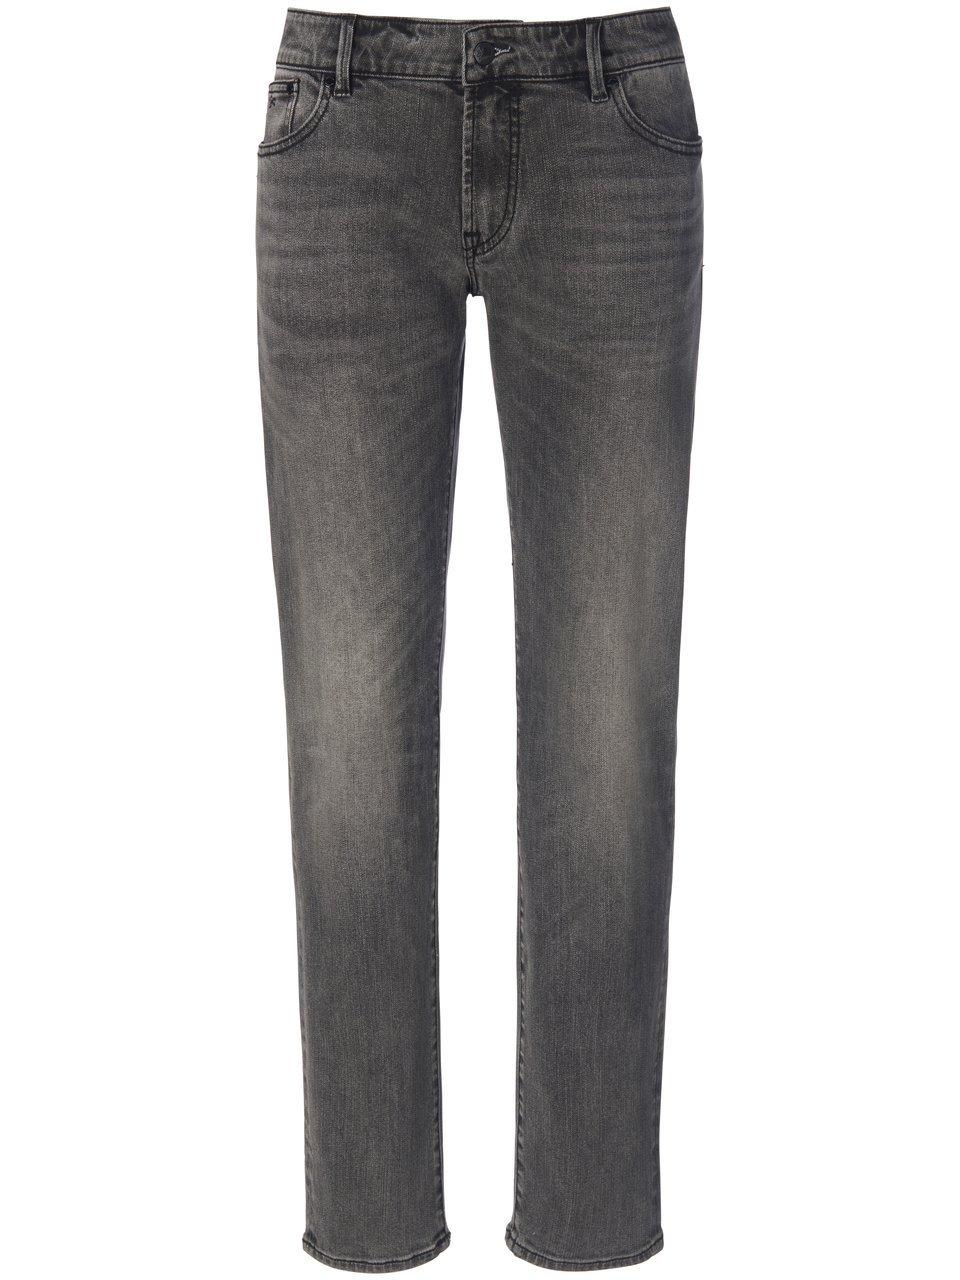 Jeans in inch-lengte 28 Van Denham grijs